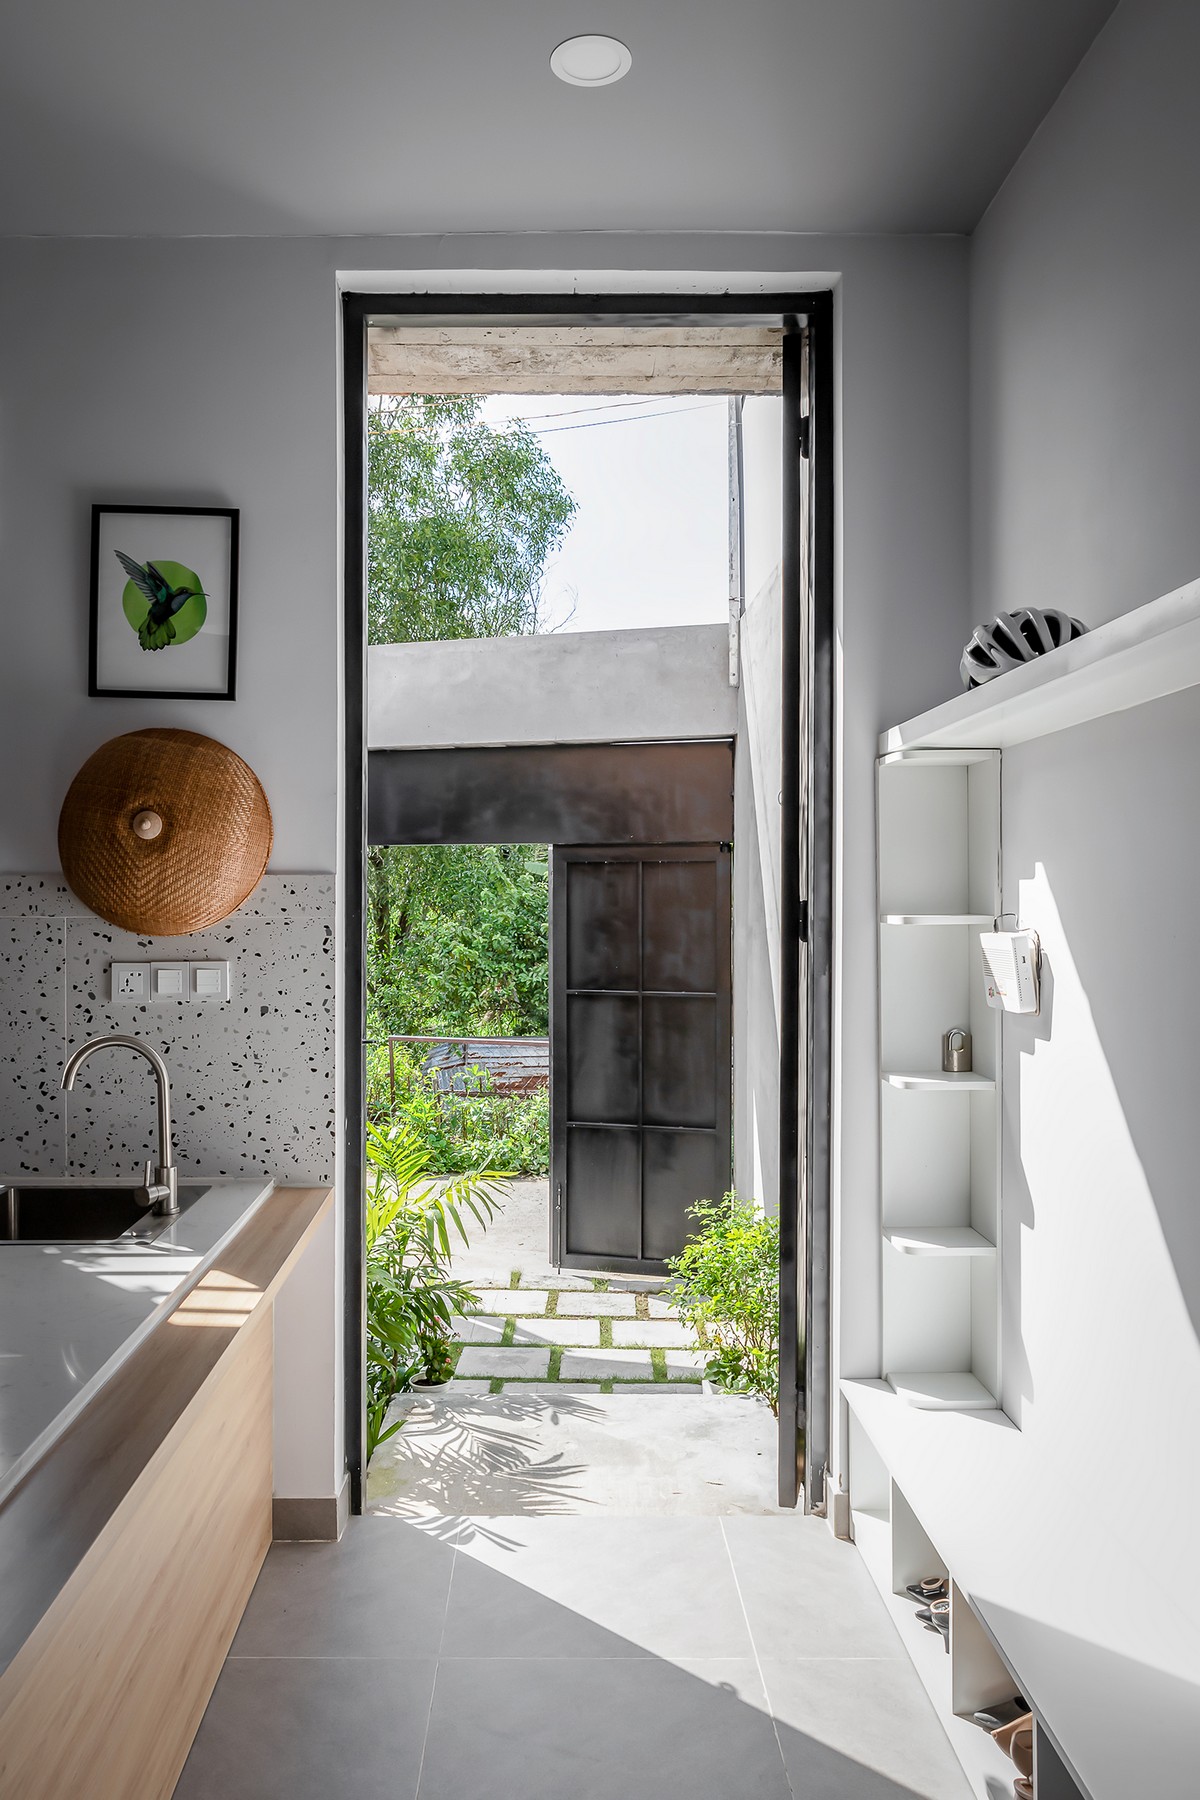 Узкий дом с зелёными пространствами во Вьетнаме пространство, чтобы, создает, зелёных, отдыха, местом, ощущение, также, качестве, разделили, дворе—, открытом, длина, сторон, видом, внутри, туалета, пространства, соединяющее, озеро